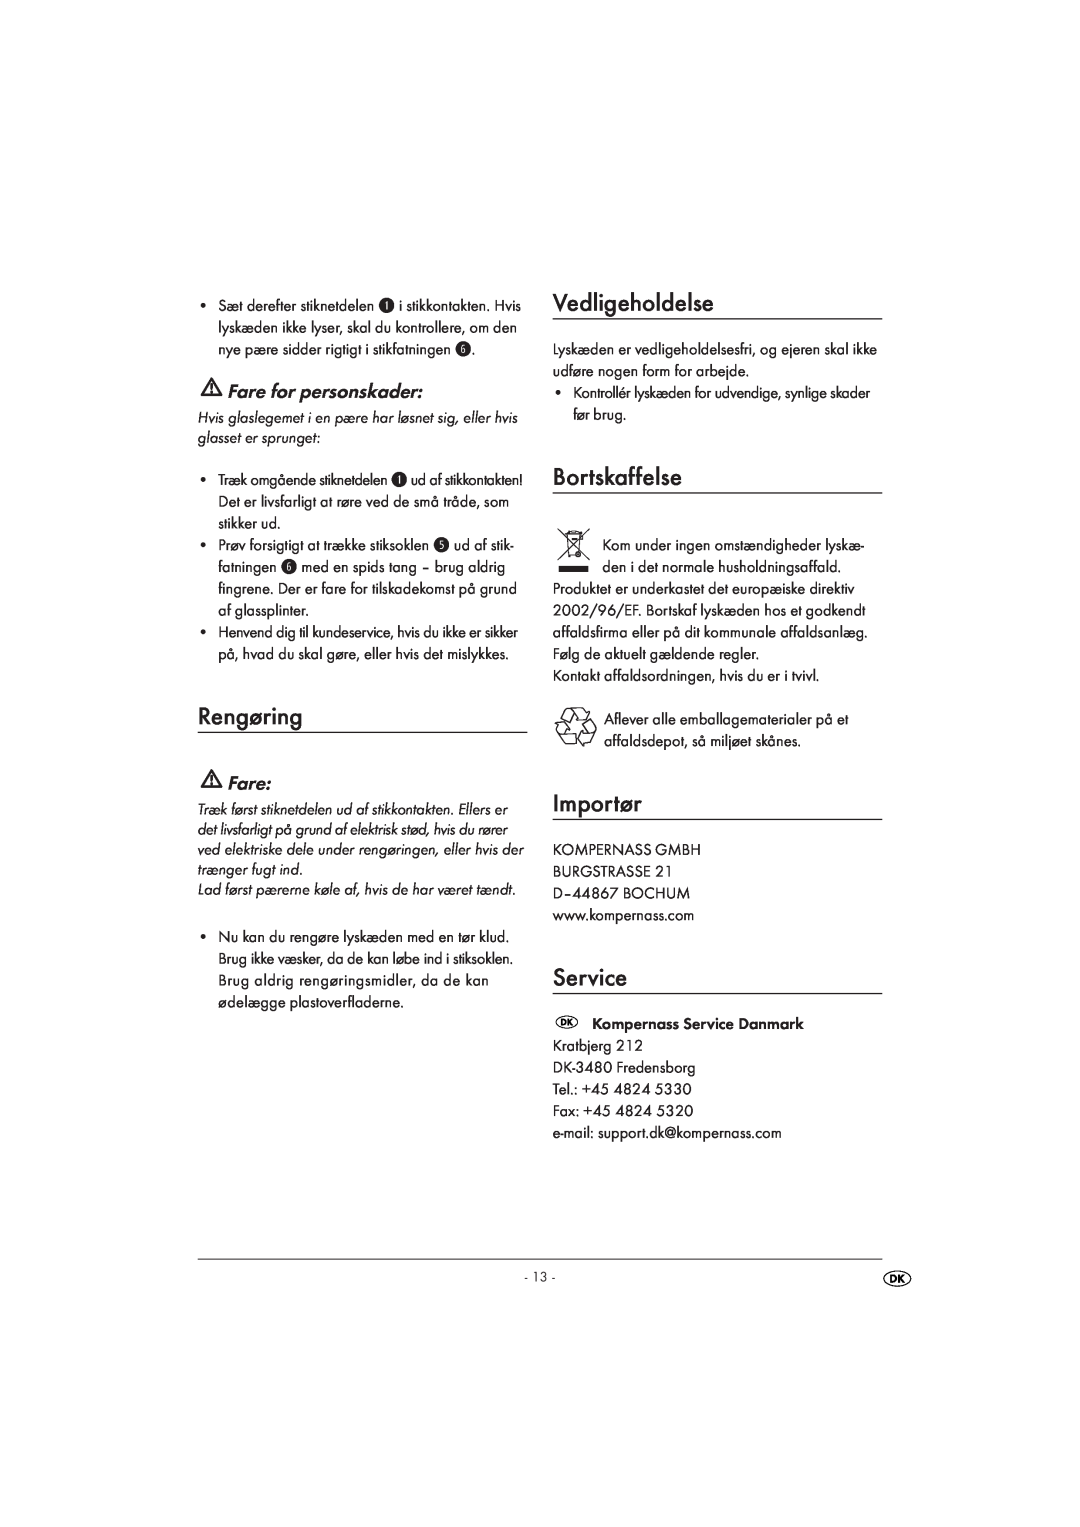 Kompernass KH 4168 manual Rengøring, Vedligeholdelse, Bortskaffelse, Importør, Fare for personskader, Service 